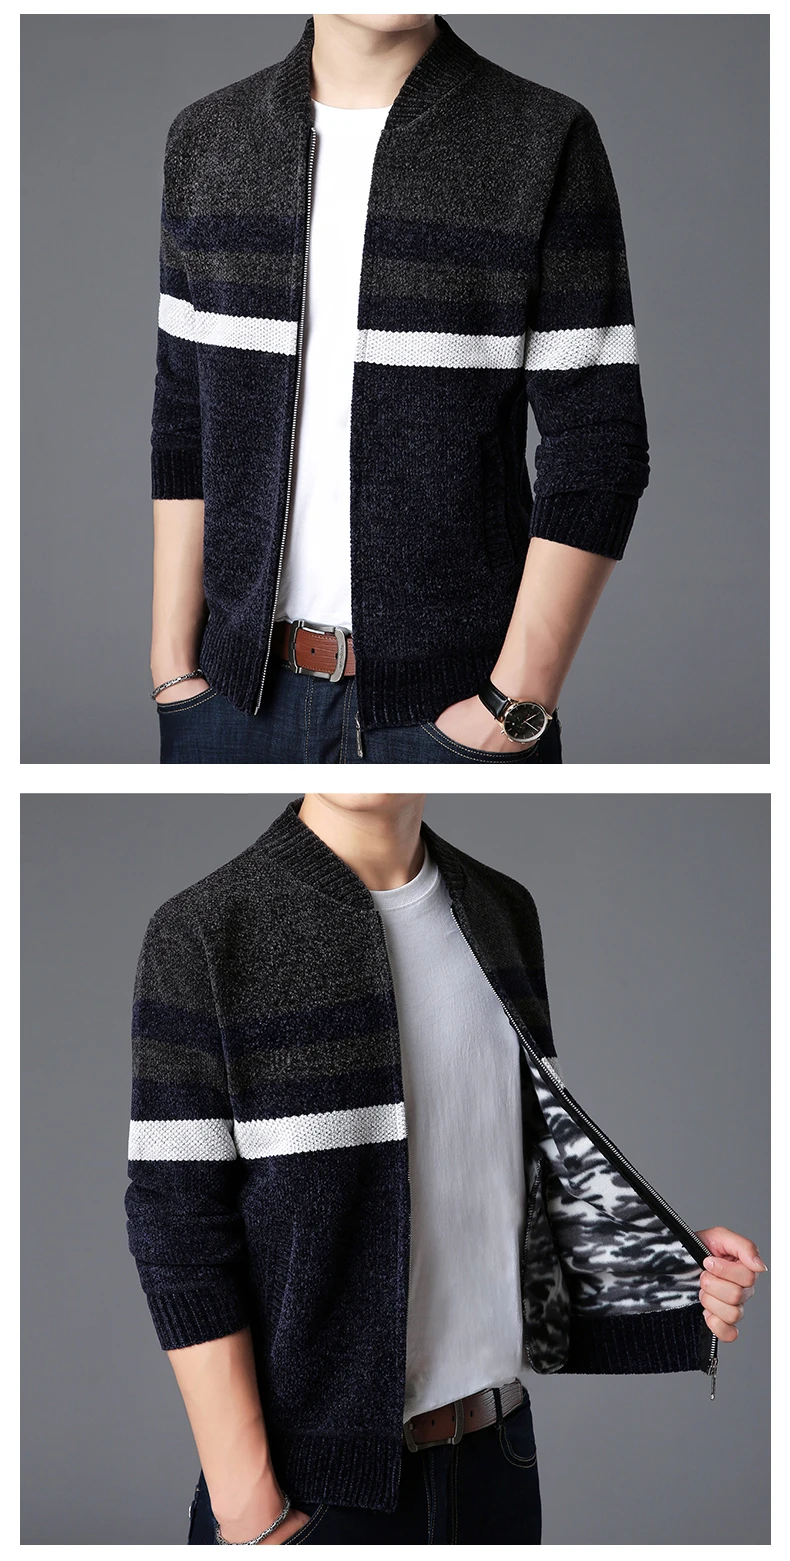 2019 новый модный бренд свитер мужской Kardigan Мужской пуловер Джемперы вязание толстые зимние корейский стиль повседневная одежда мужской